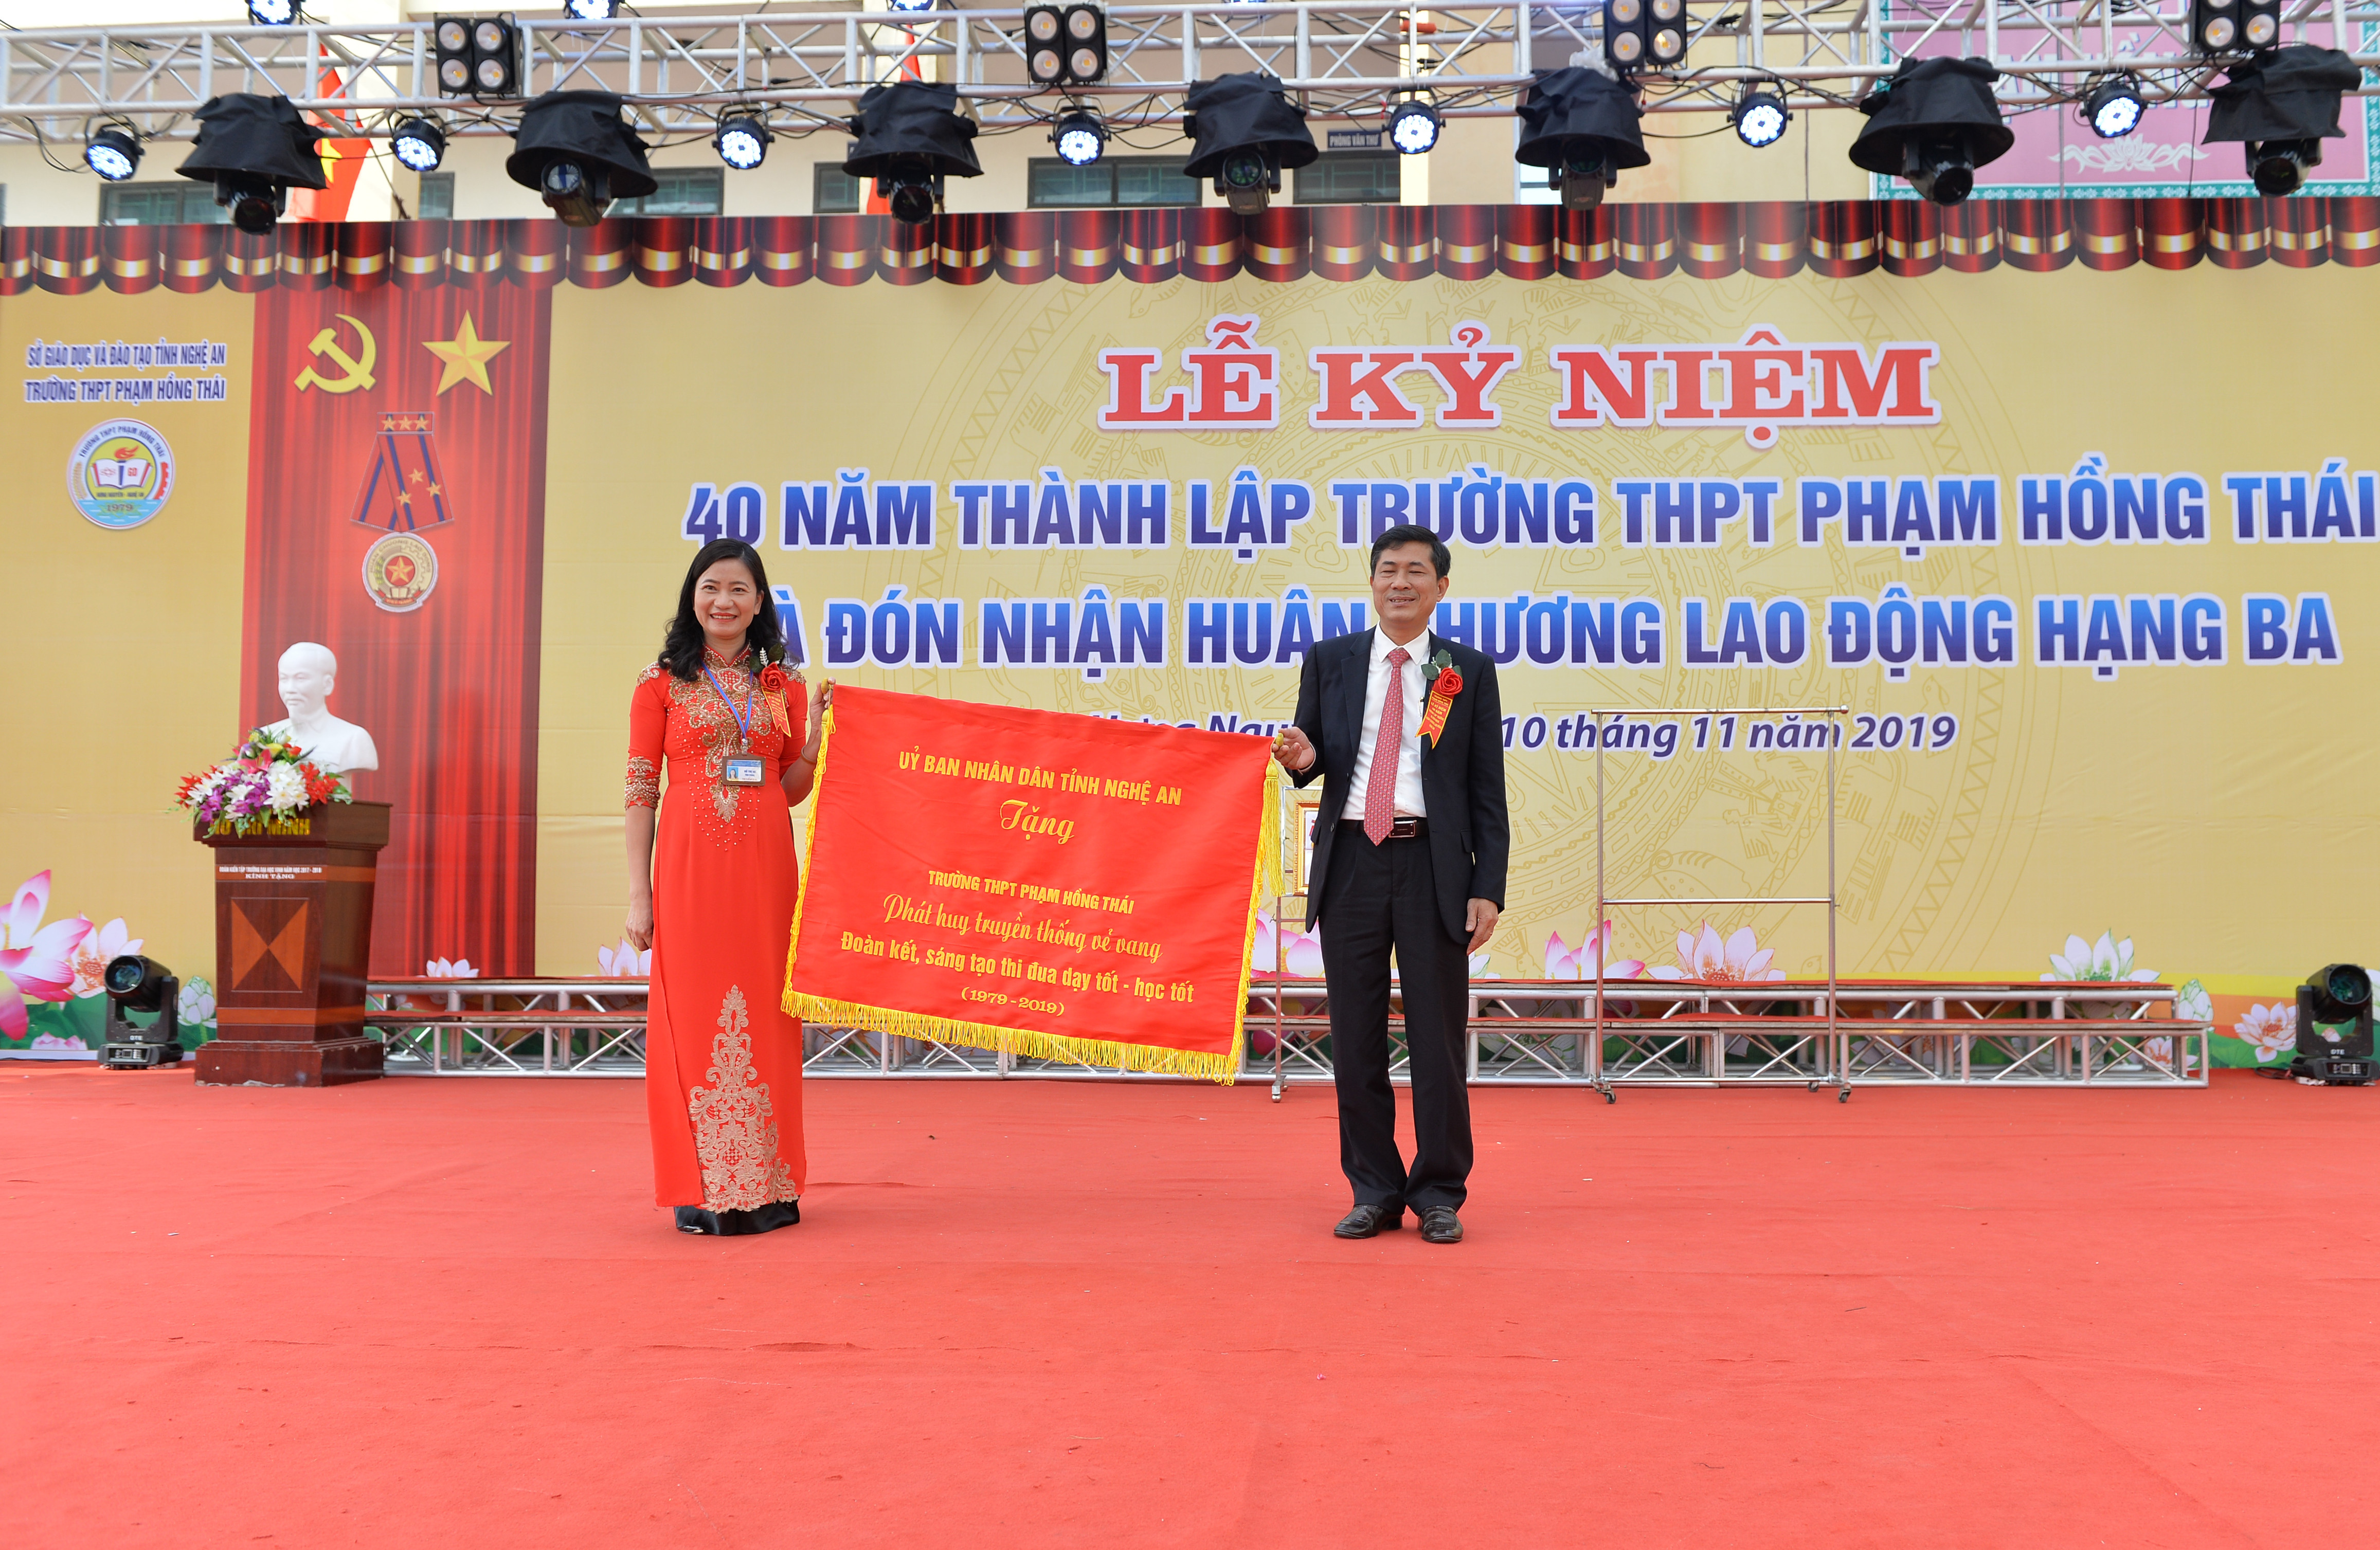 Đồng chí Thái Văn Thành trao bức trướng của UBND tỉnh cho lãnh đạo nhà trường. Ảnh: Thành Cường